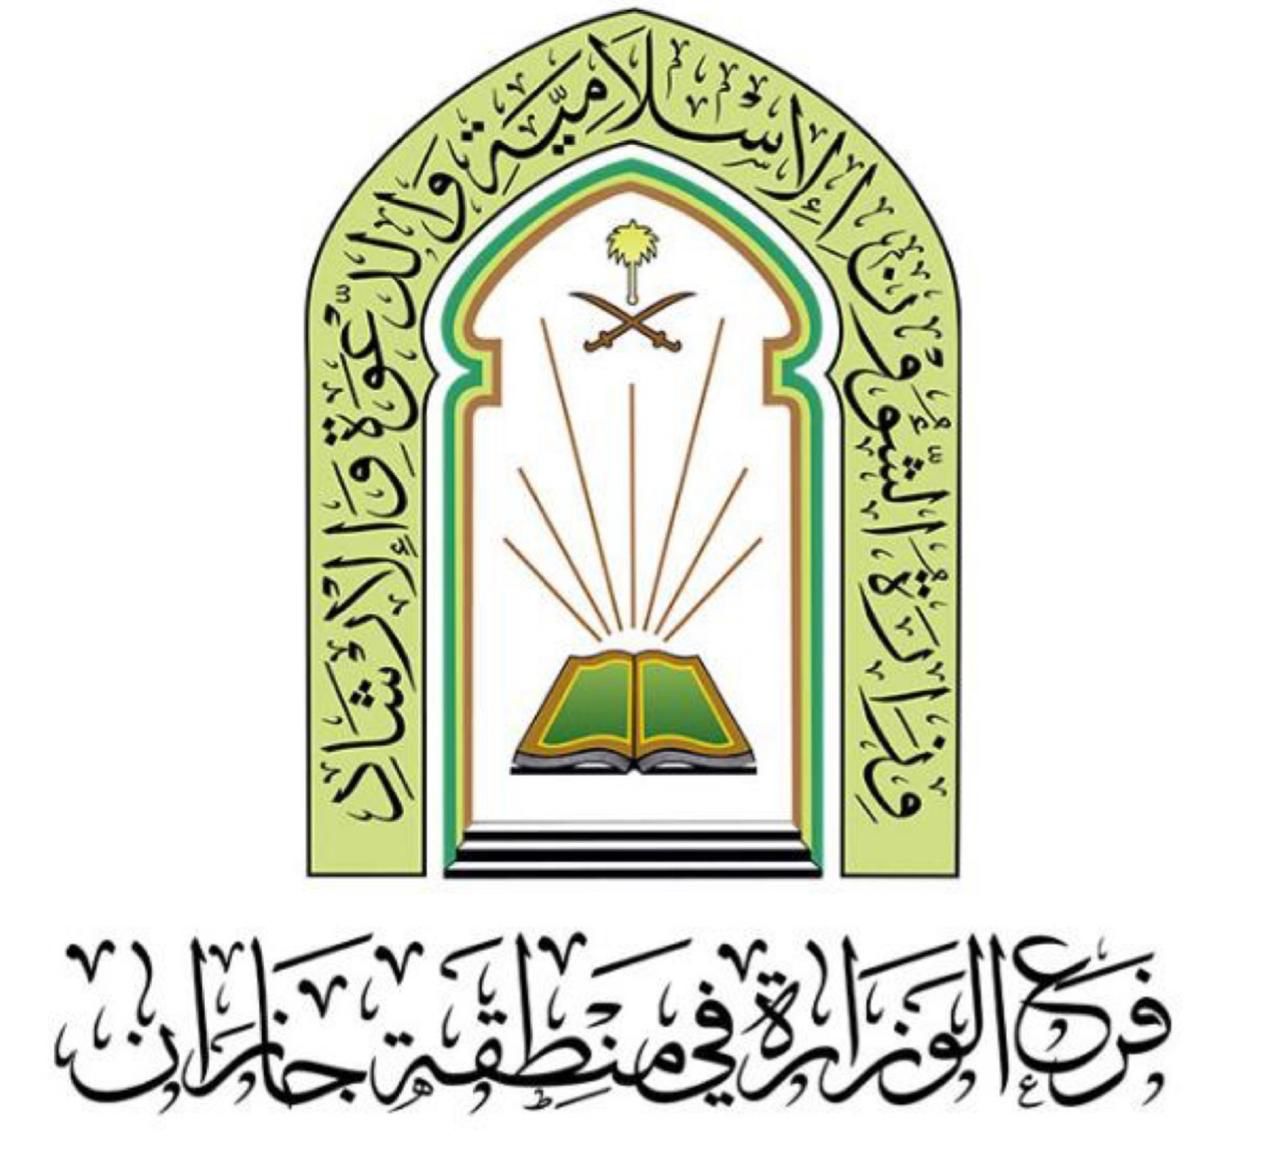 بمشاركة تسعة دعاة اسلامية جازان تنفذ الجولة الدعوية الأولى لهذا العام في فضل صيام يوم العاشر من محرم